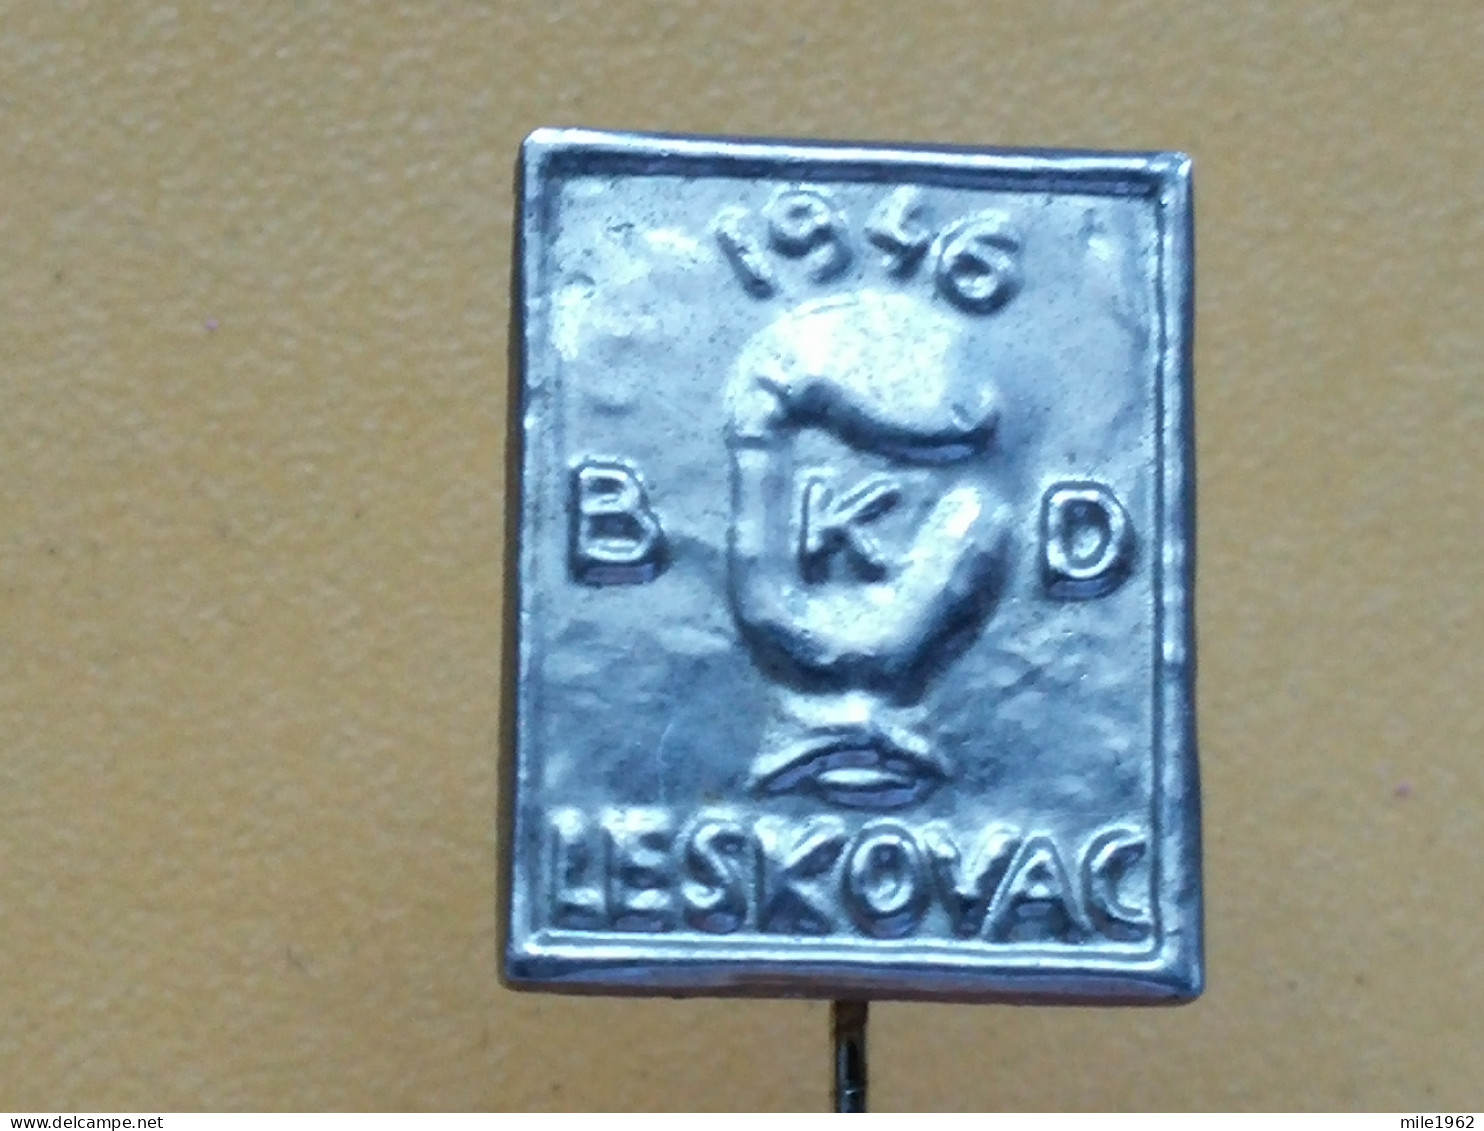 Badge Z-52-1 - BOX, BOXE, BOXING CLUB LESKOVAC, SERBIA - Boxe